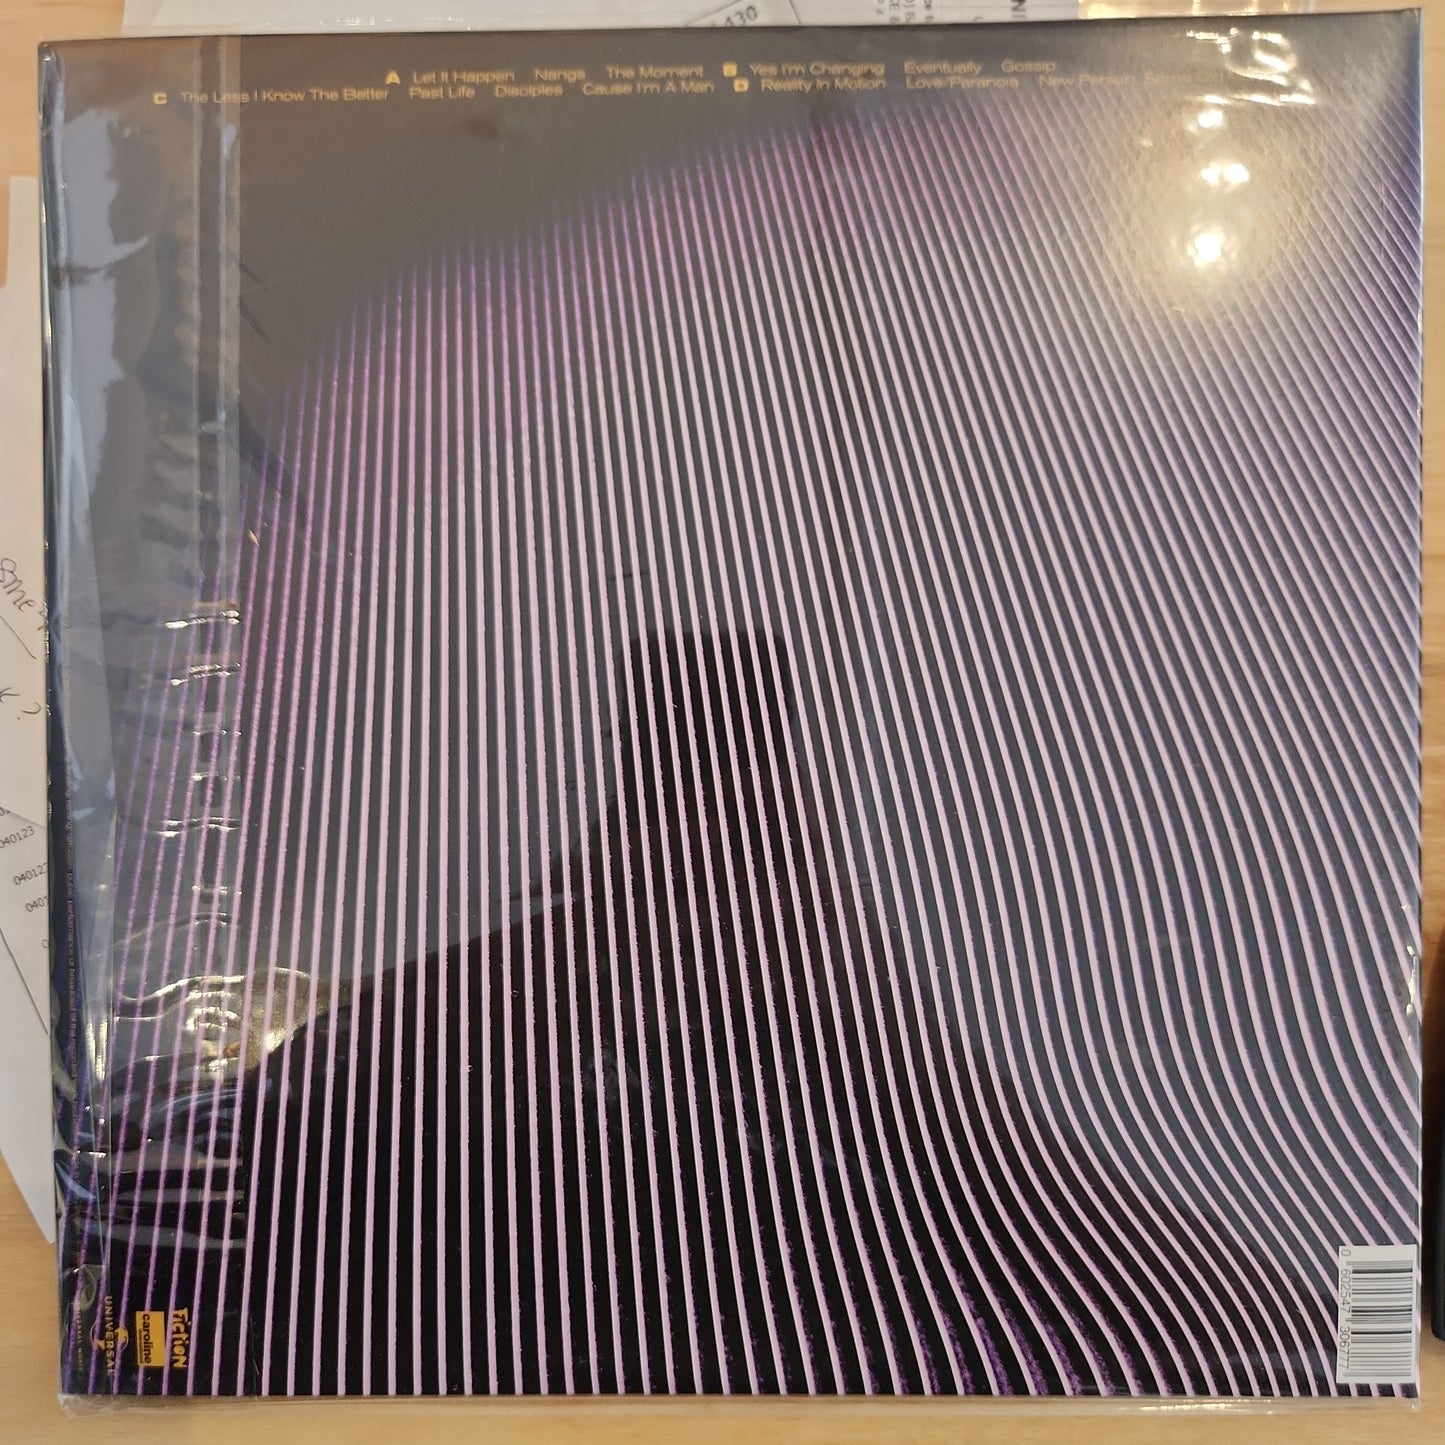 Tame Impala - Currents - Vinyl LP